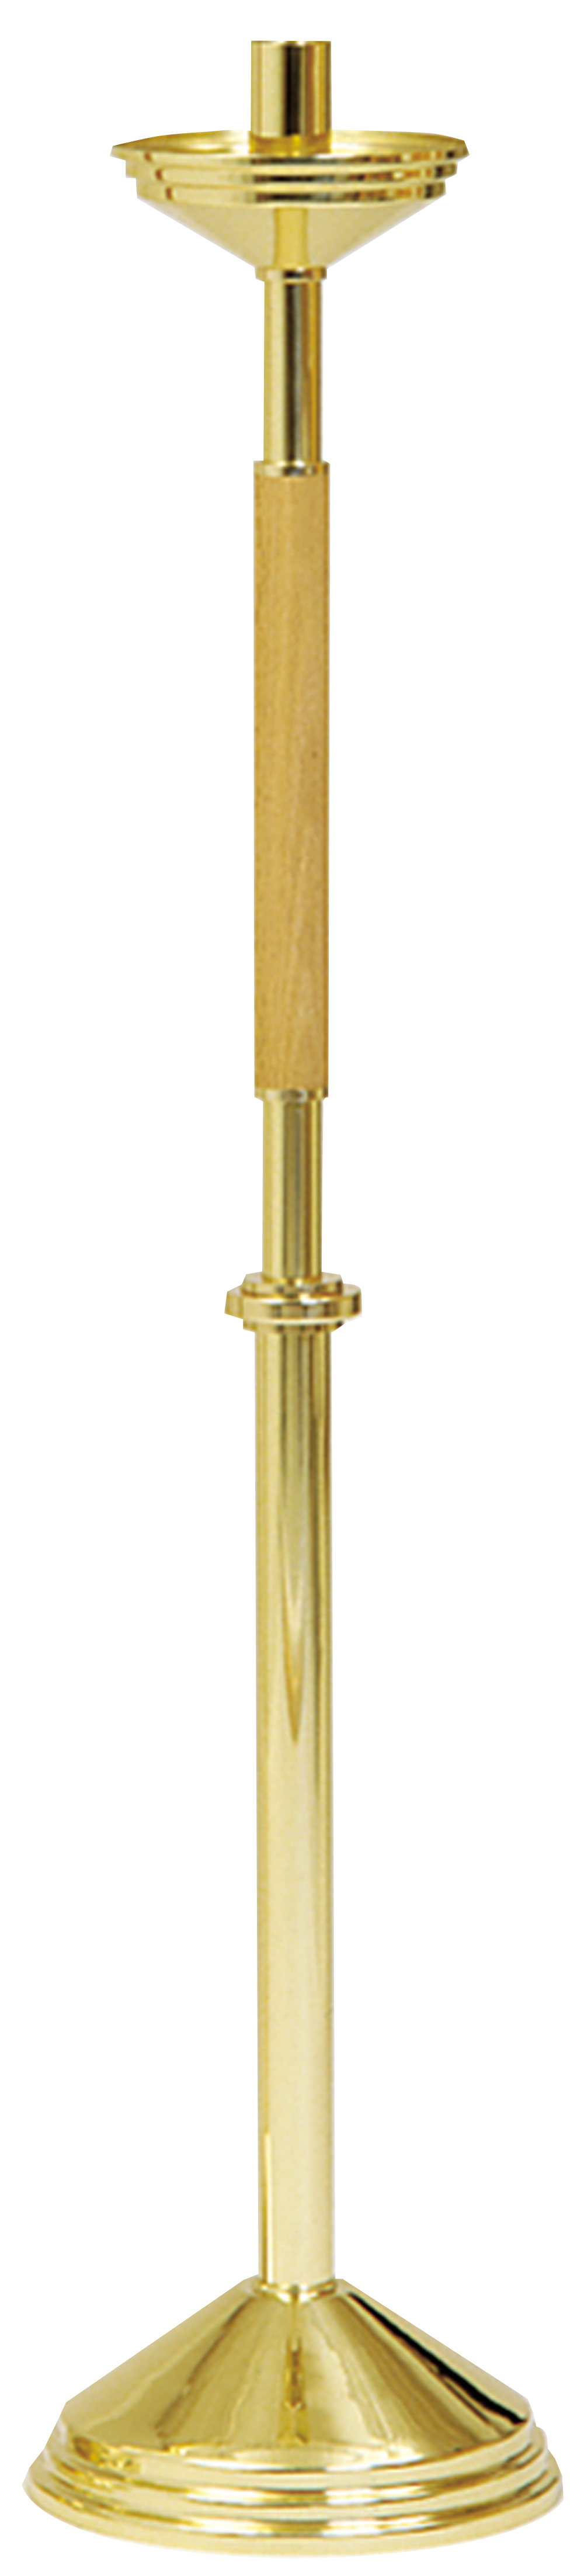 Paschal Candlestick 46 inch Oak Brass 1 15/16 inch Socket